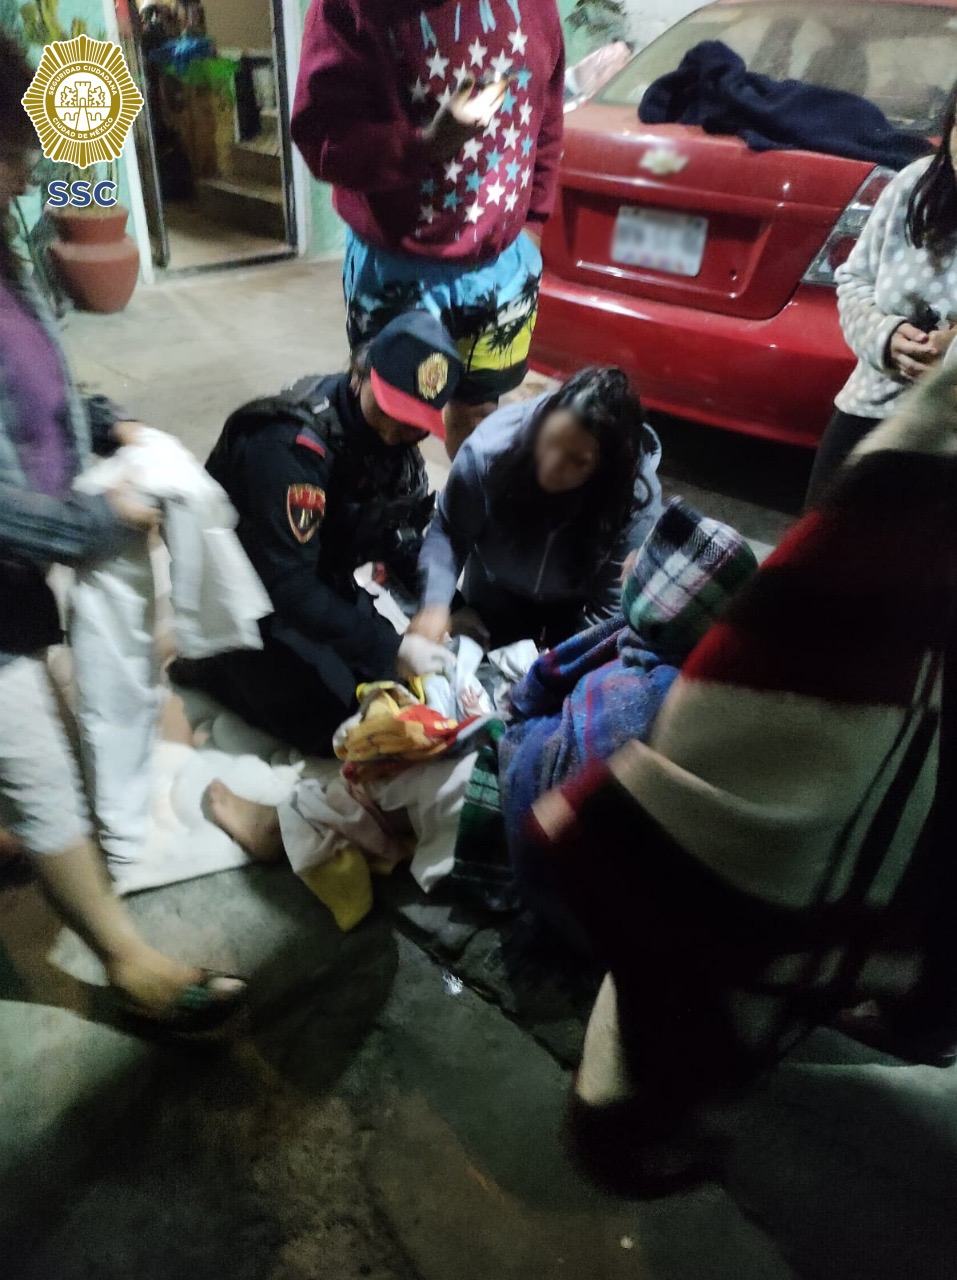 En la alcaldía Álvaro Obregón, oficiales de la SSC ayudaron a una joven en labor de parto y recibieron al recién nacido (Video)